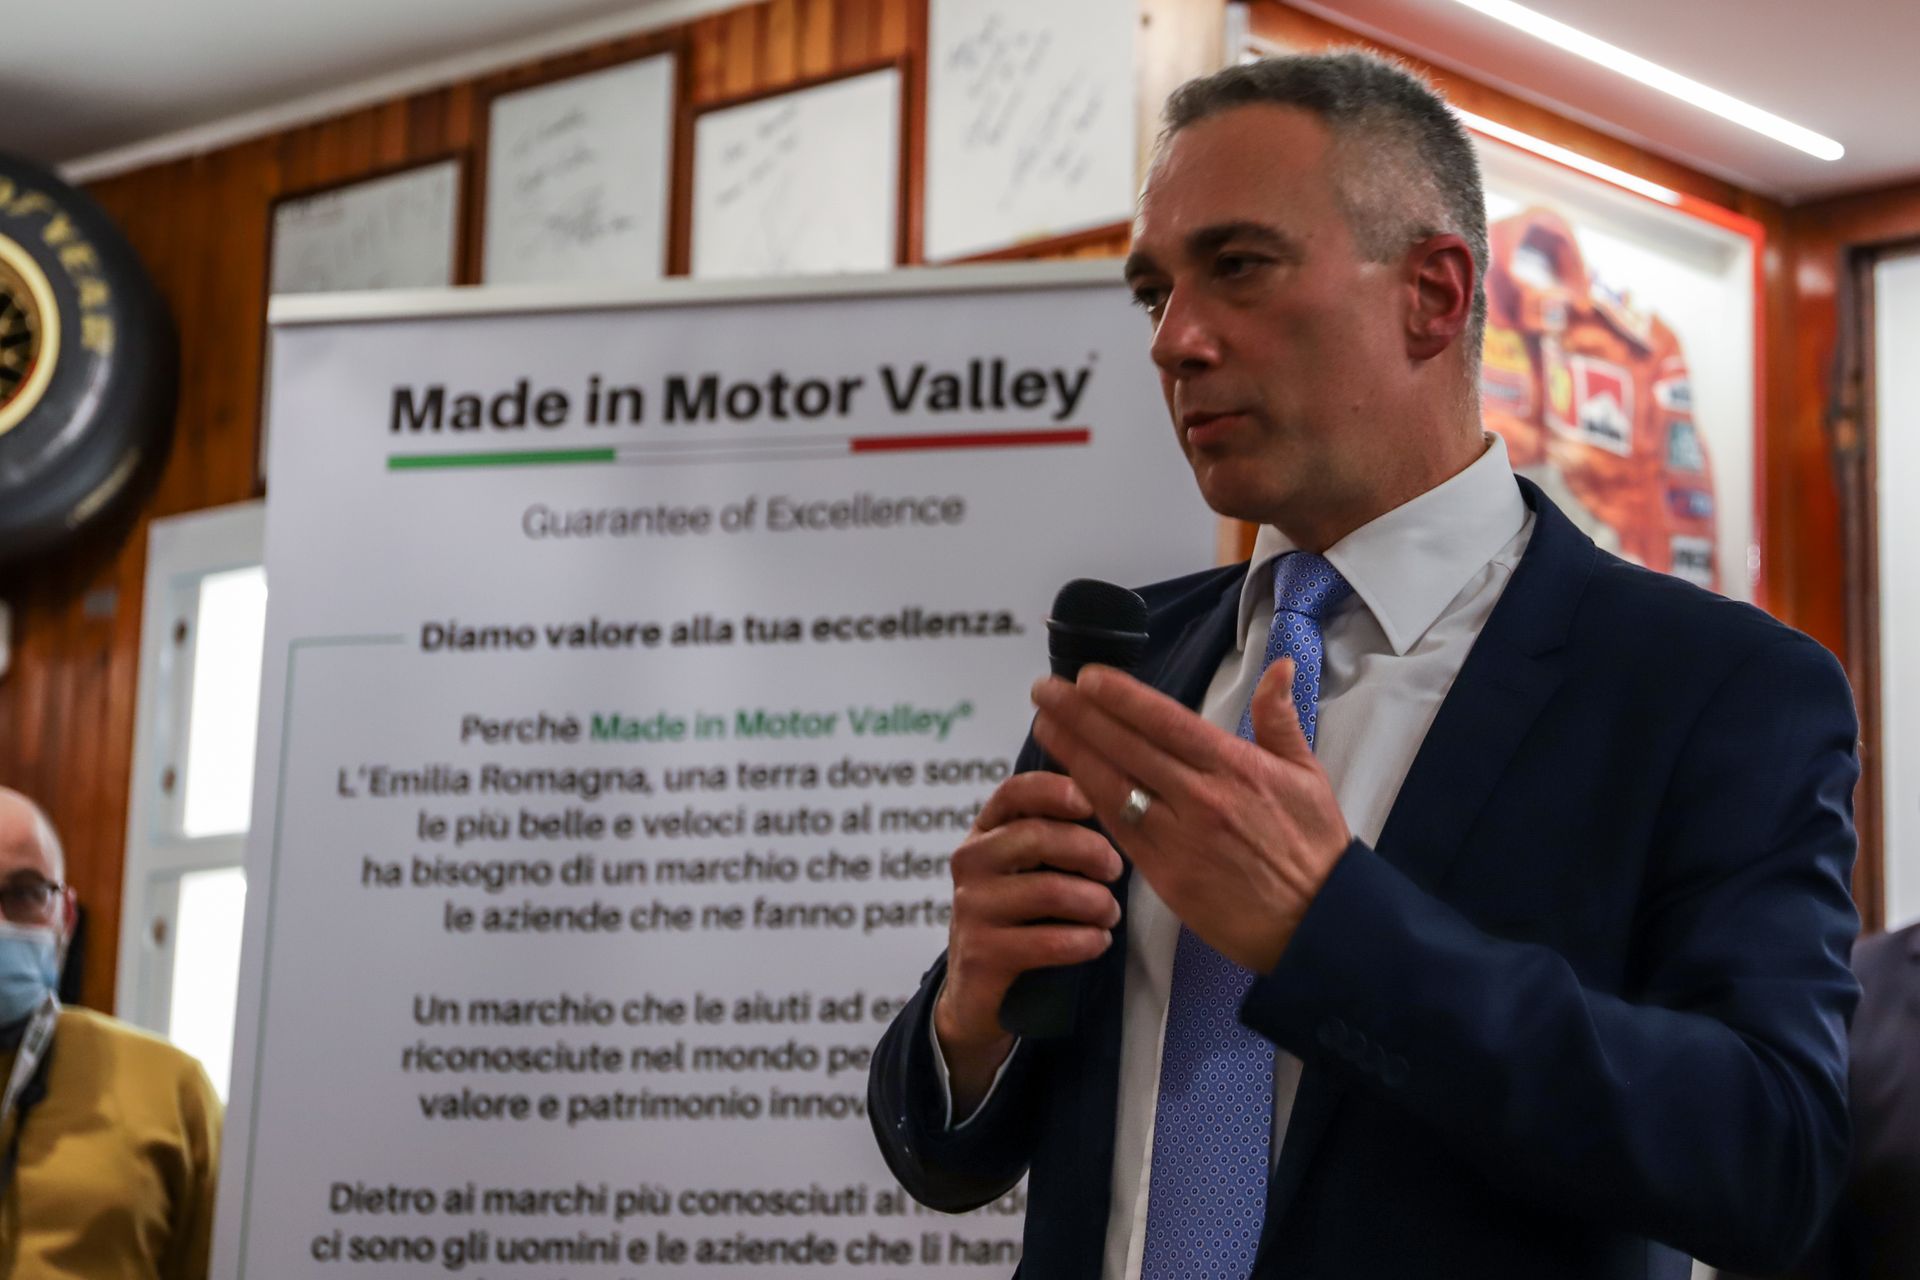 Entreprenör från Finale Socrate Zizza vid presentationen av initiativet "Made in Motor Valley" på Fiorano Modenese